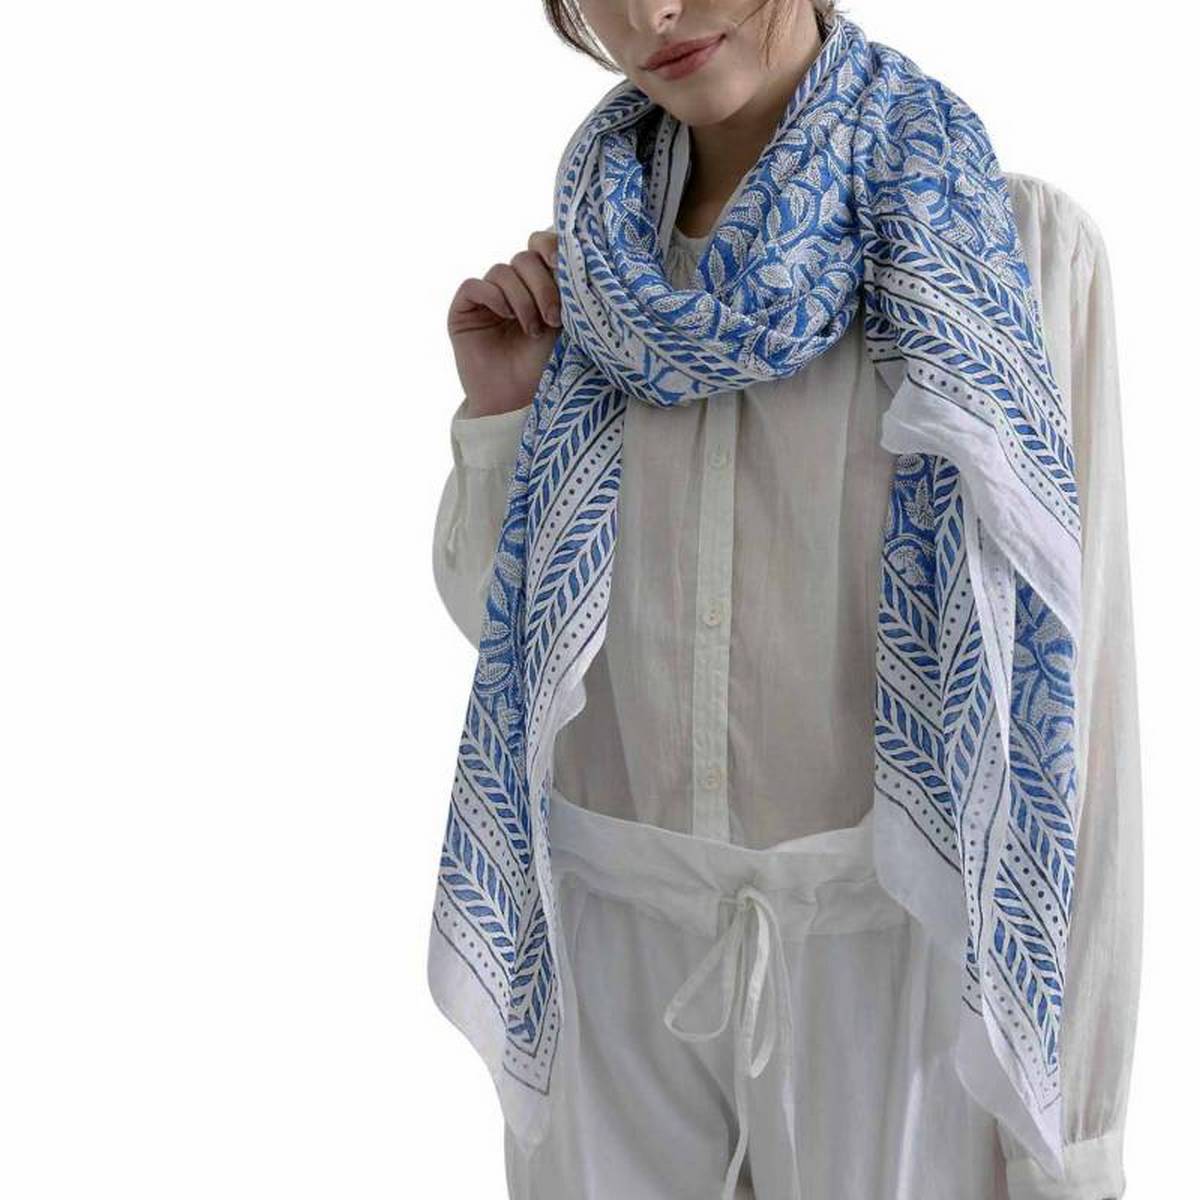 foulard zen ethic etole-blockprint-leaf-100-coton-110x180-cm une idee cadeau chez ugo et lea   (3)